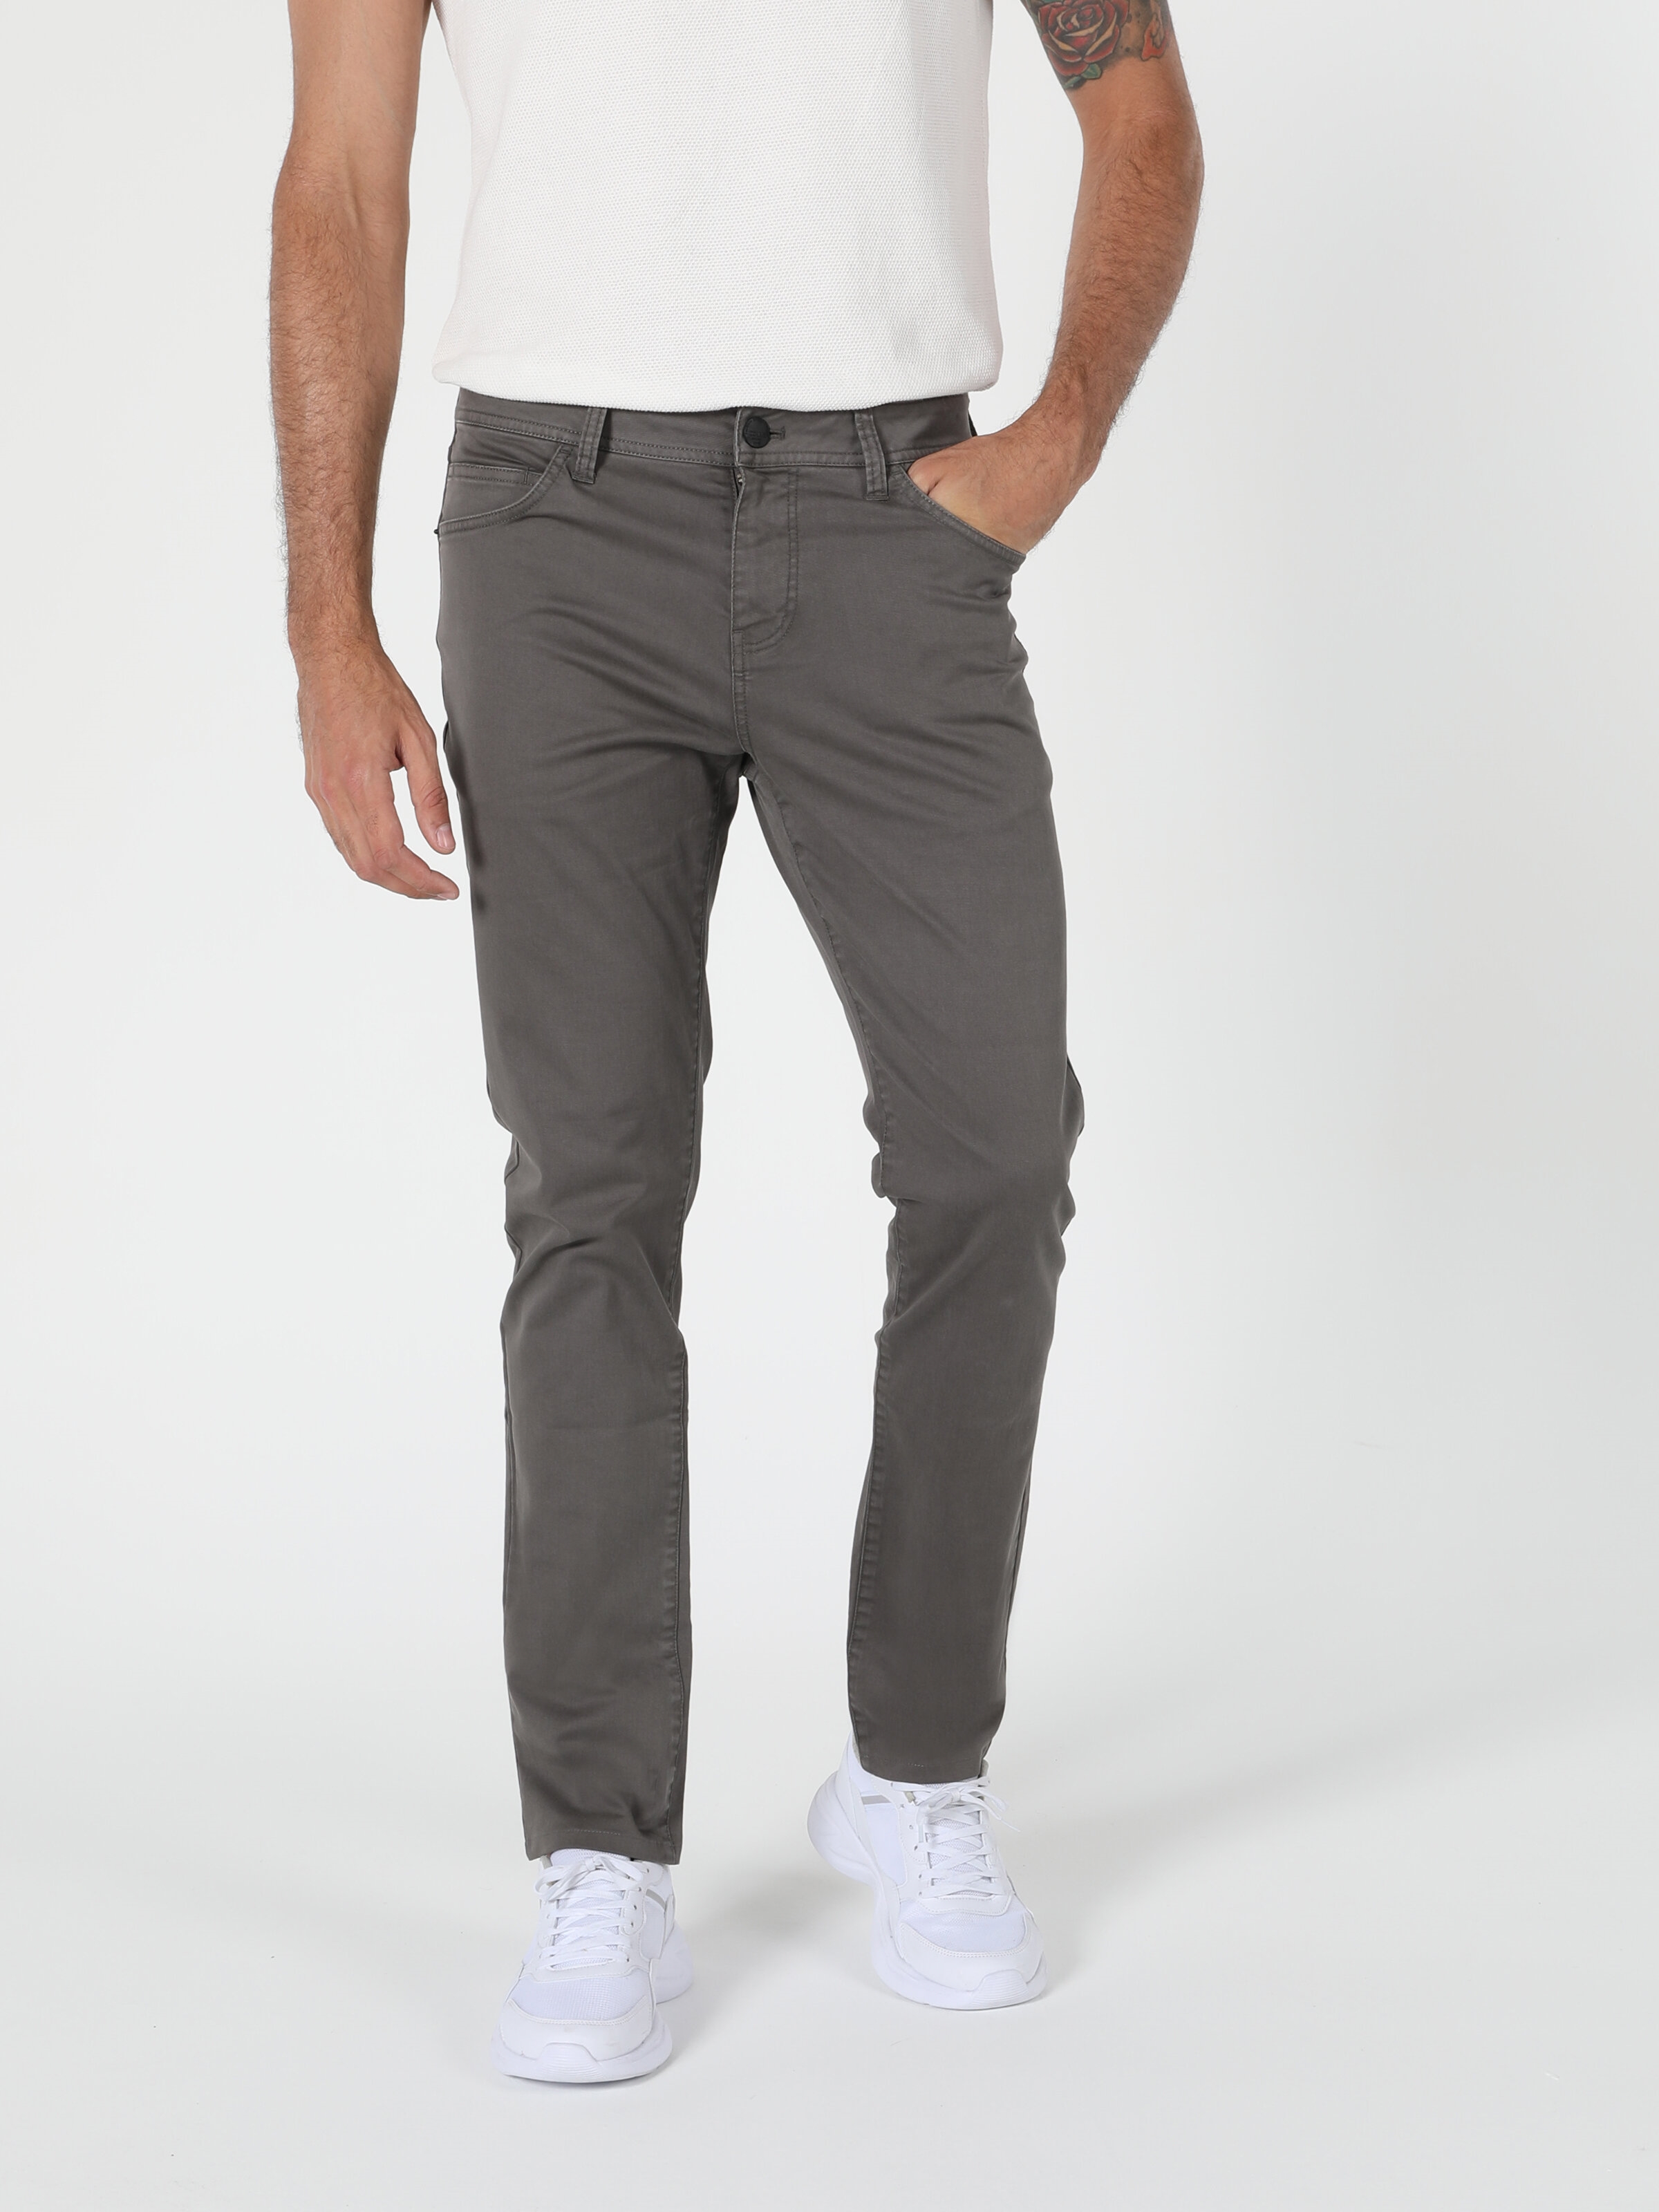 Afficher les détails de Pantalon Homme Coupe Droite Taille Basse Coupe Normale Jambe Droite Anthracite